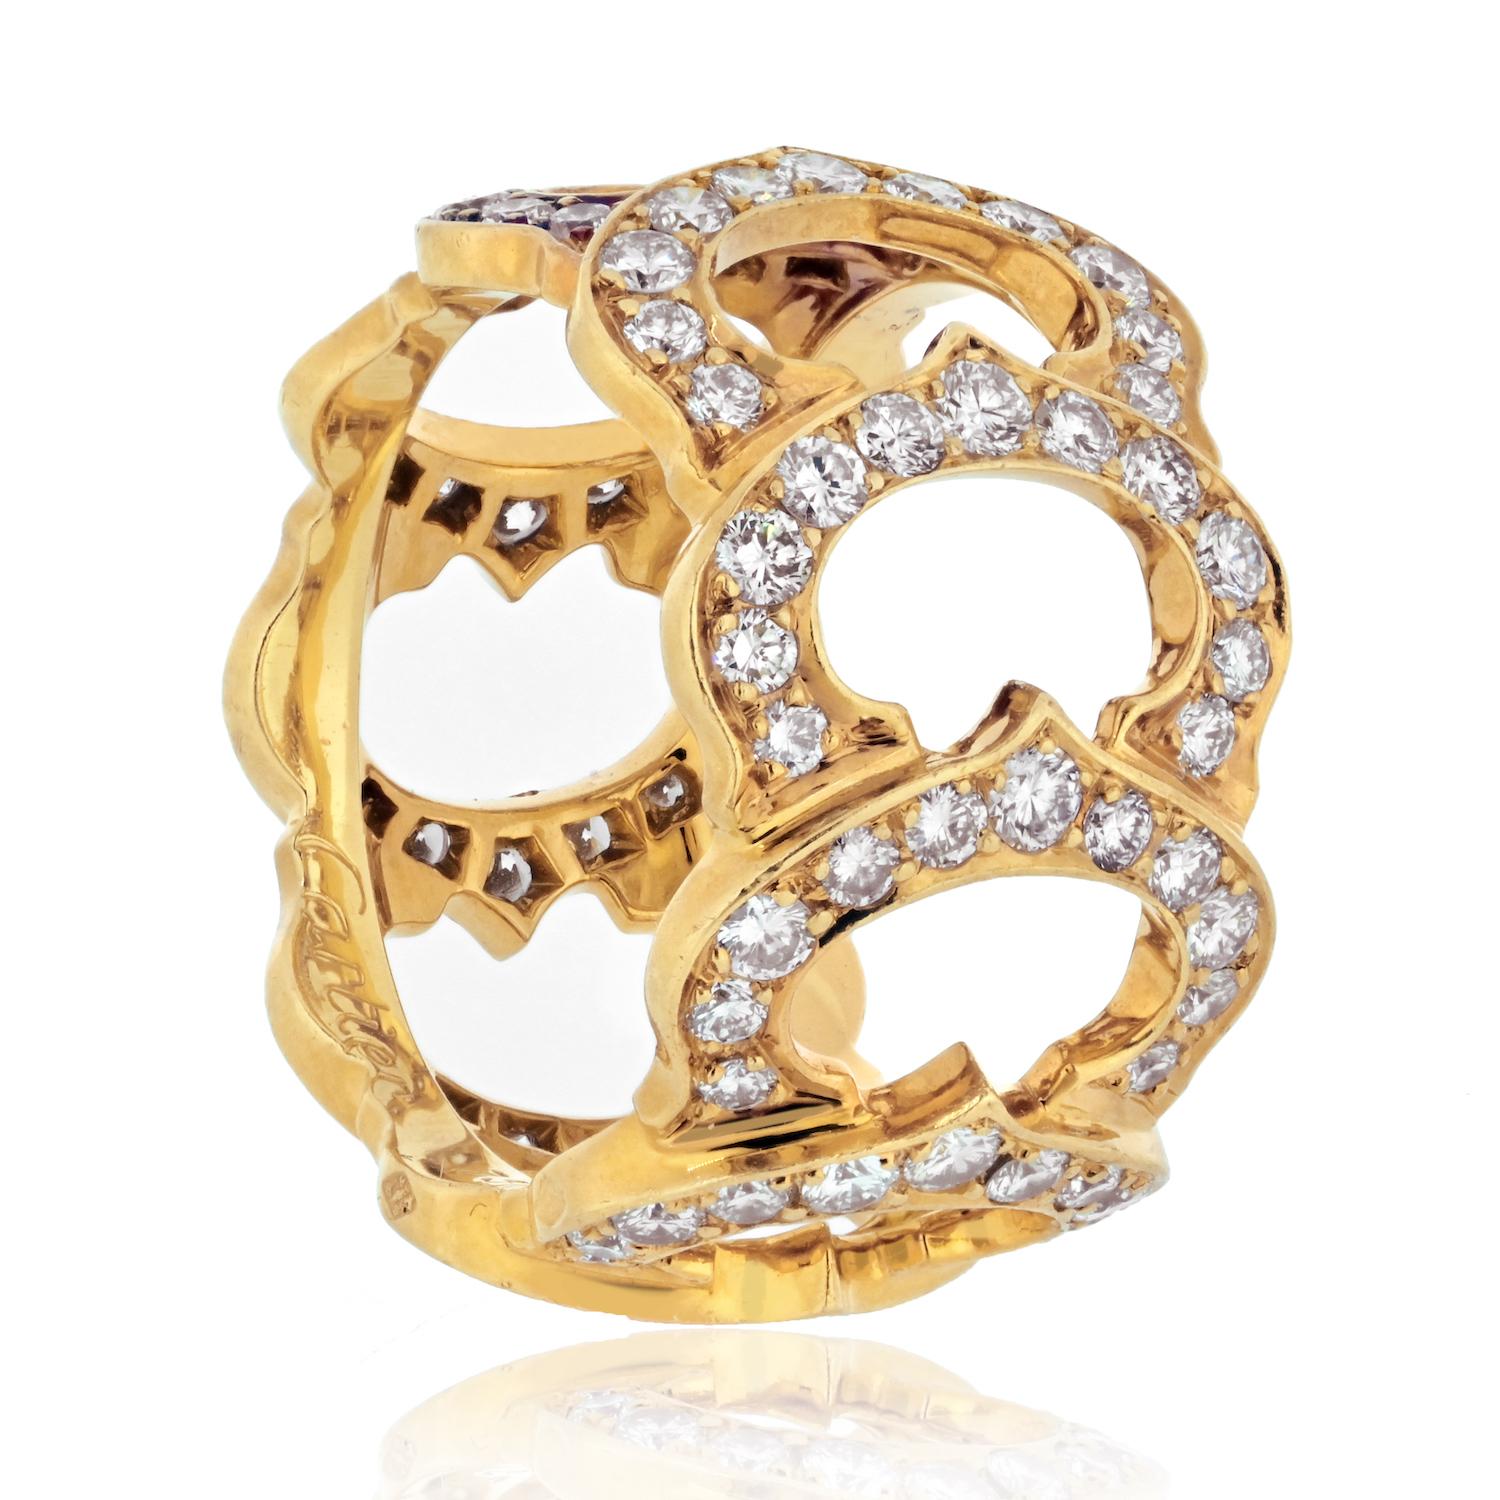 Der Ring C De Cartier aus 18-karätigem Gelbgold ist ein wahres Zeugnis für das Engagement der Marke für zeitlose Eleganz und außergewöhnliche Handwerkskunst. Dieser exquisite Ring im ikonischen 